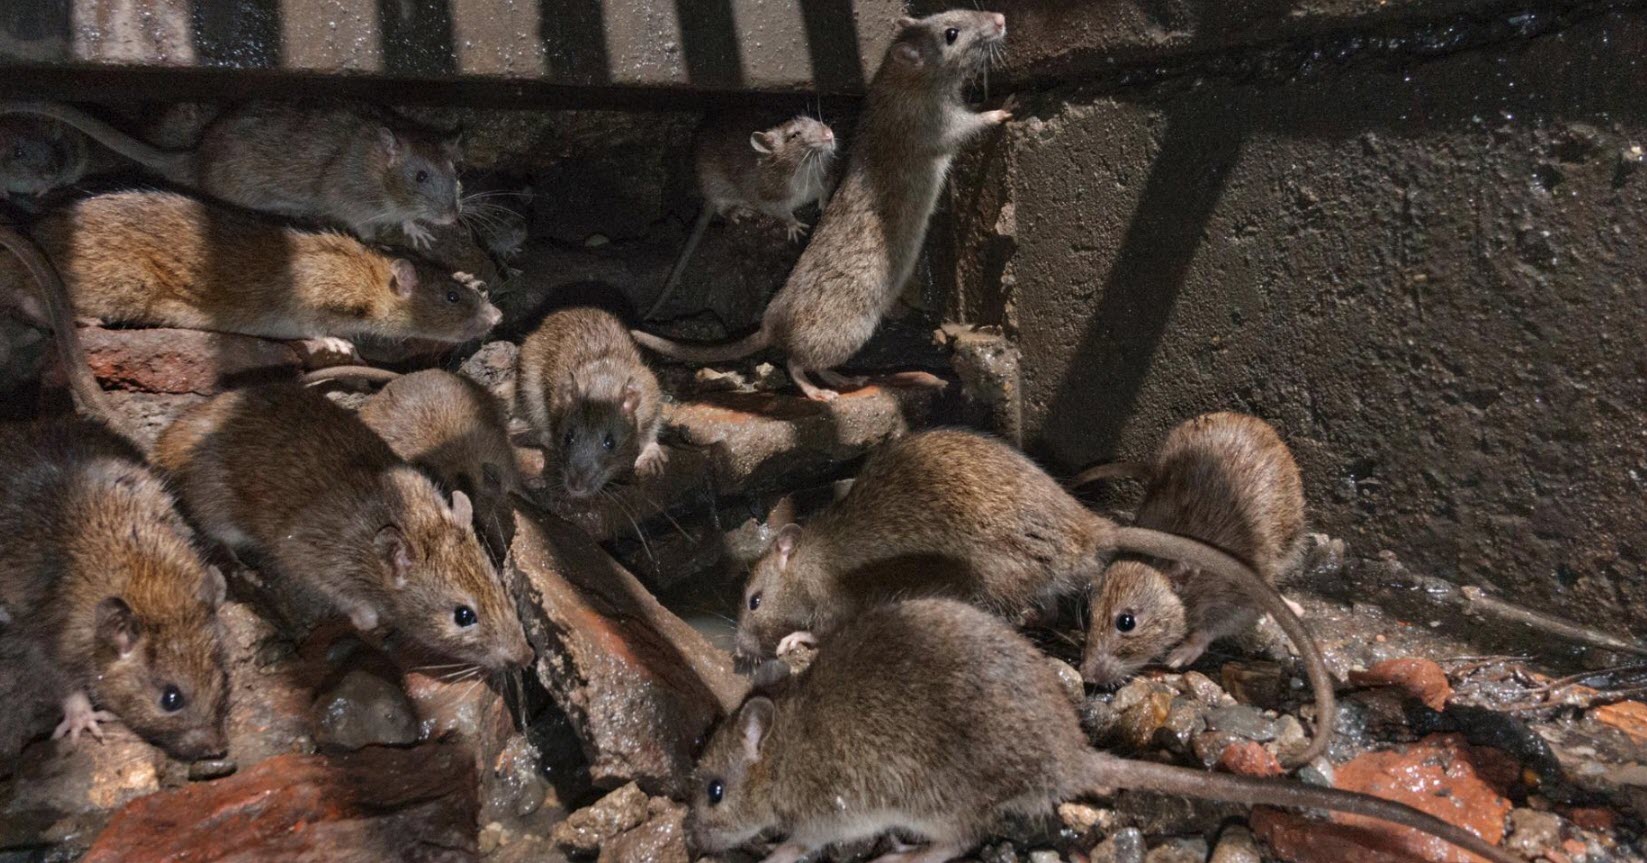 pest control auckland rats